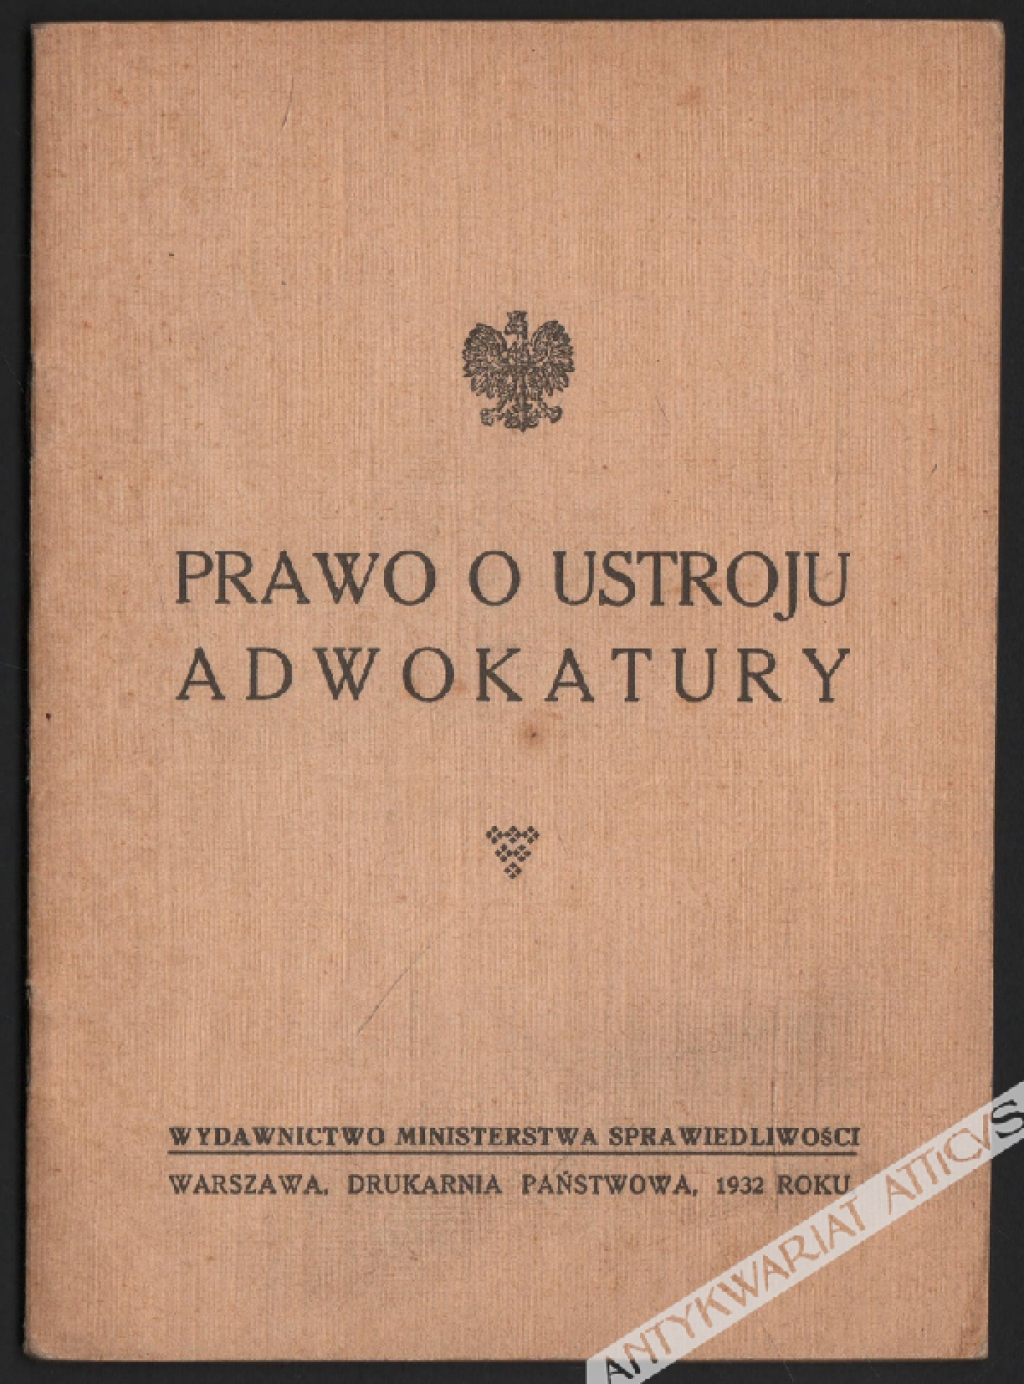 Prawo o ustroju adwokatury (1932)